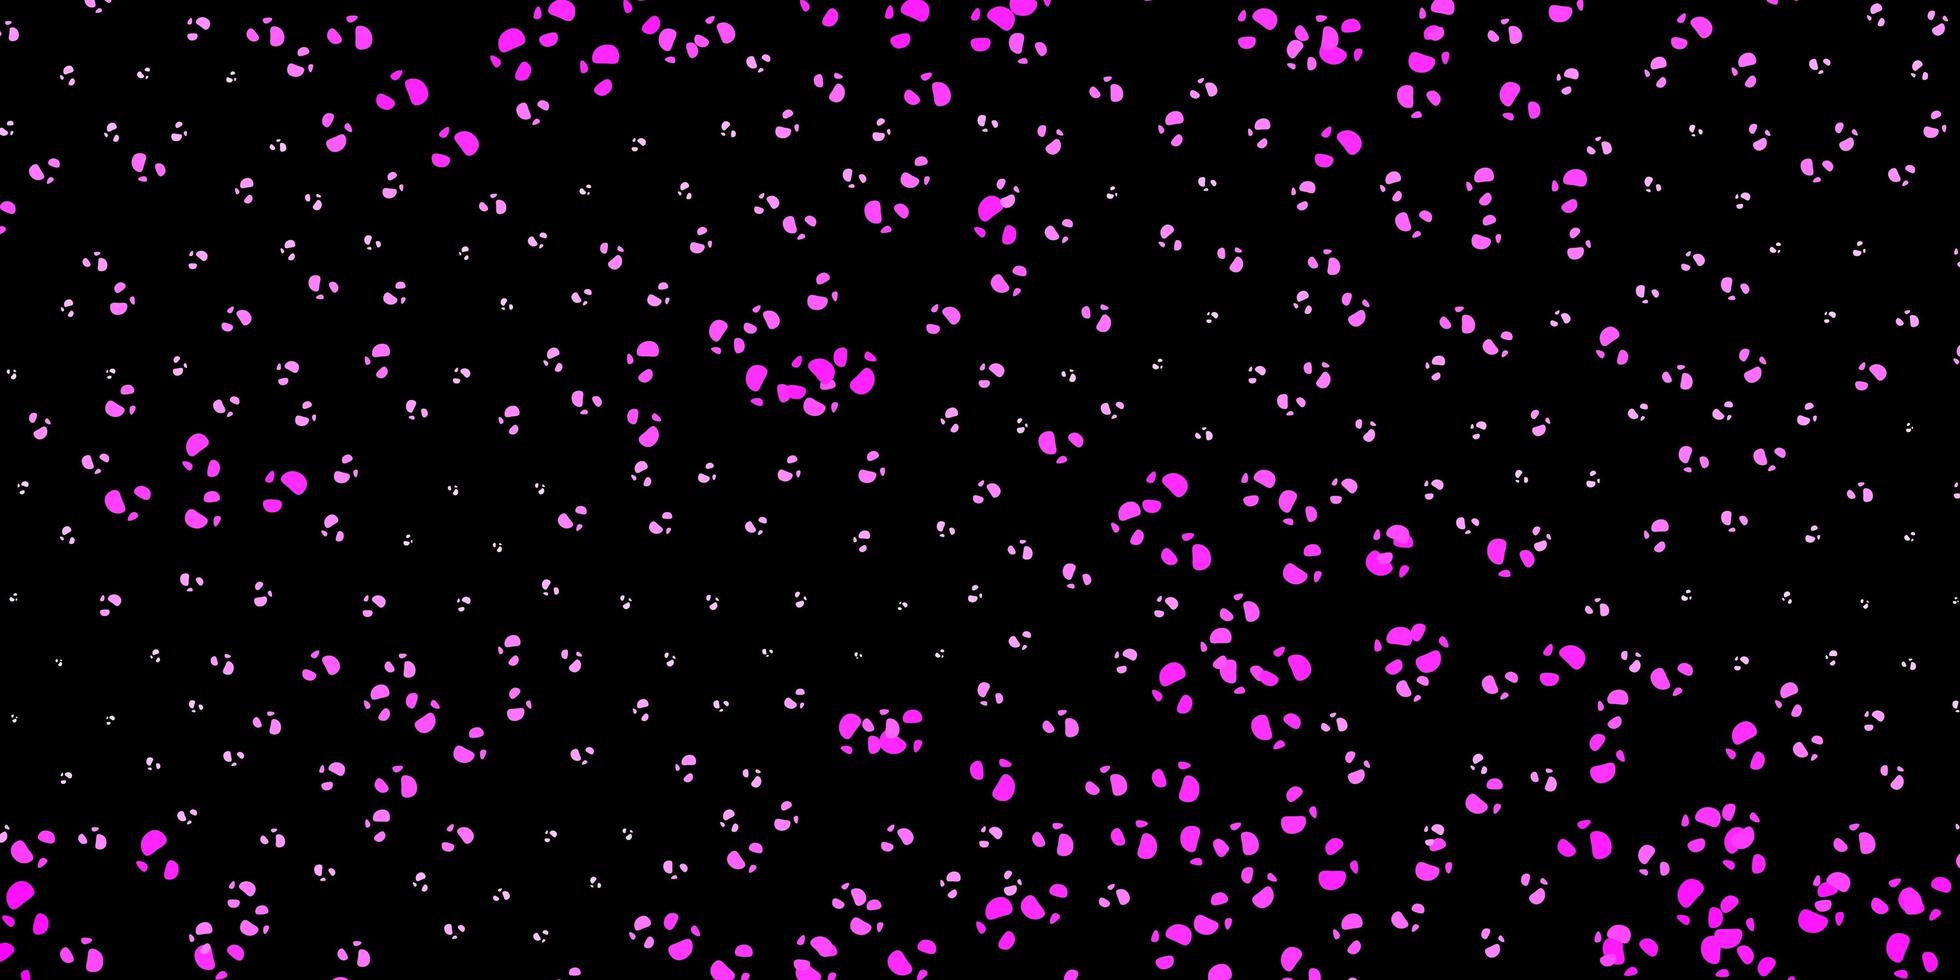 sfondo vettoriale rosa scuro con forme caotiche.